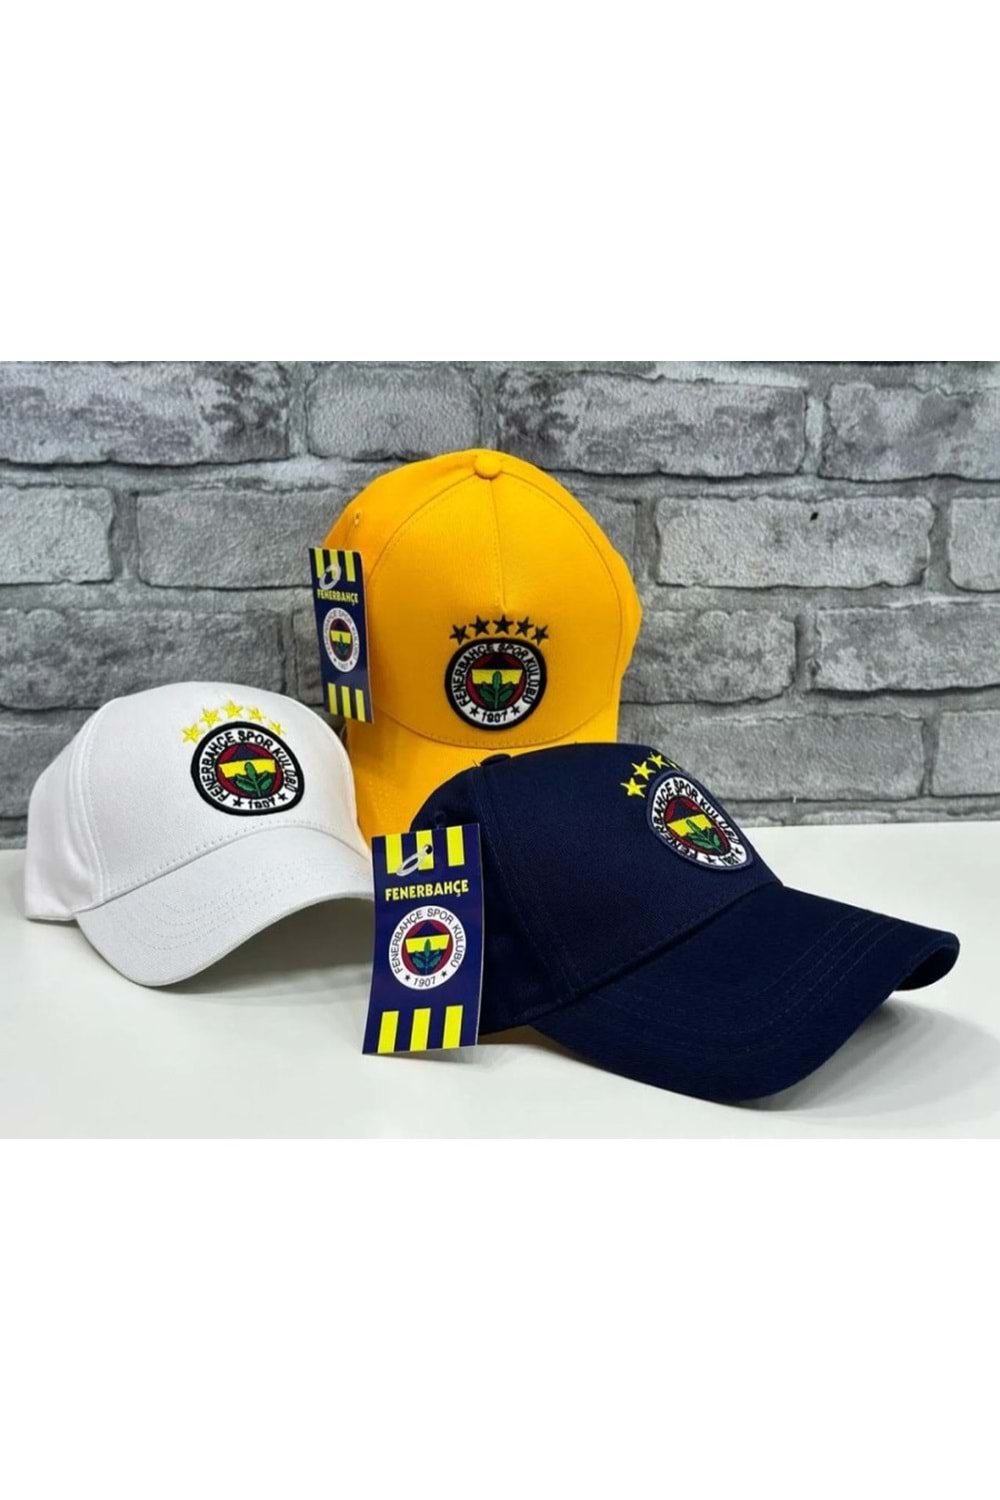 Fenerbahçe F01560 Unisex İşlemeli Yetişkin Şapka - Lacivert